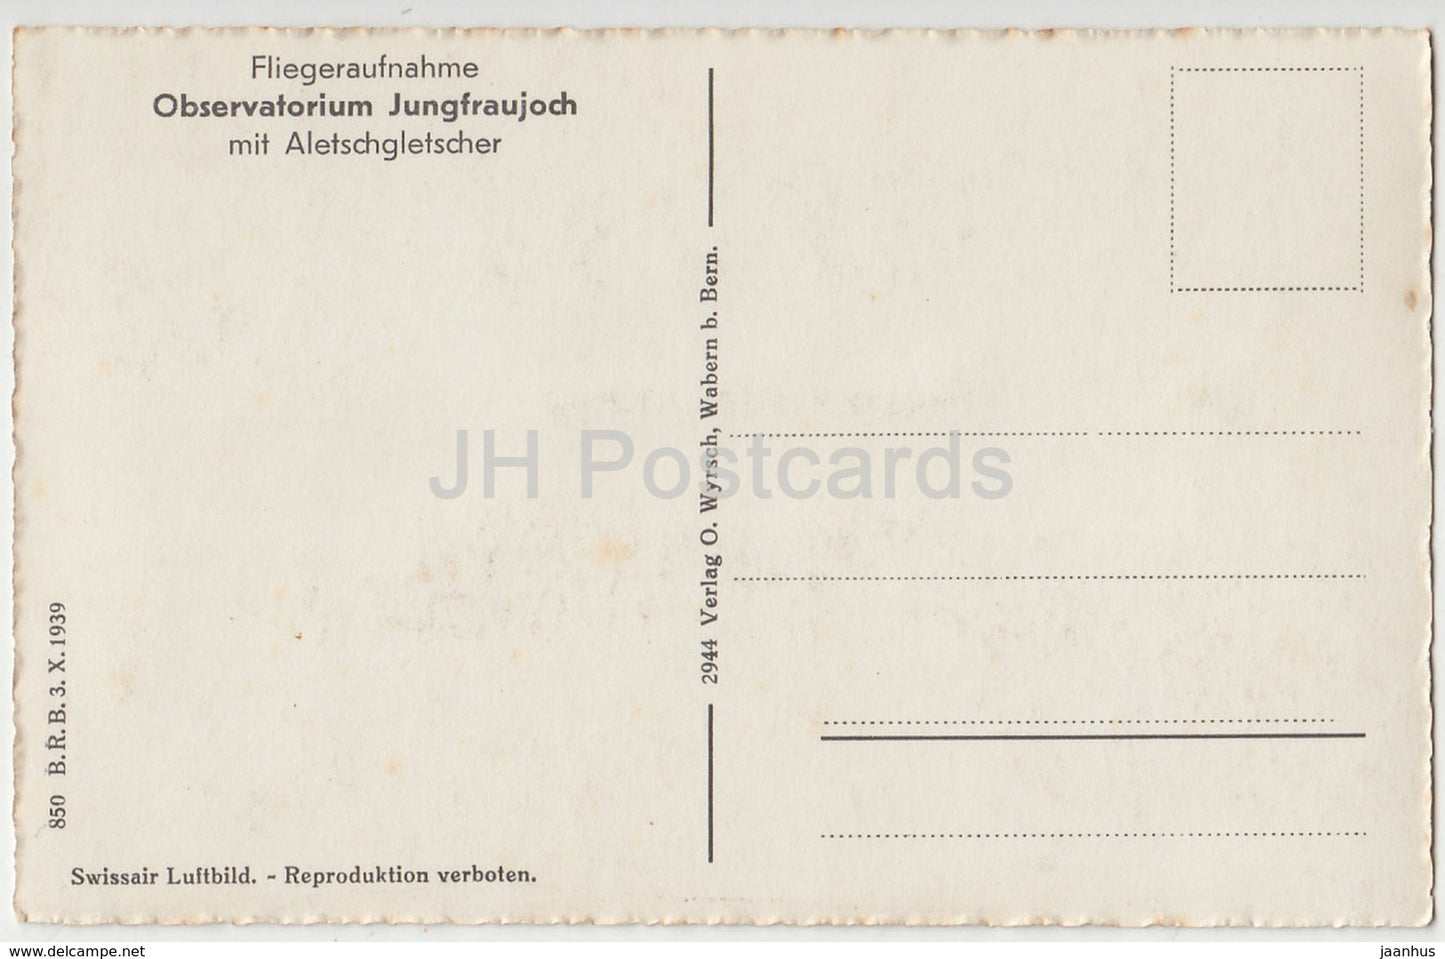 Fliegeraufnahme - Observatoire Jungfraujoch mit Aletschgletscher - observatoire - Suisse - carte postale ancienne - inutilisée